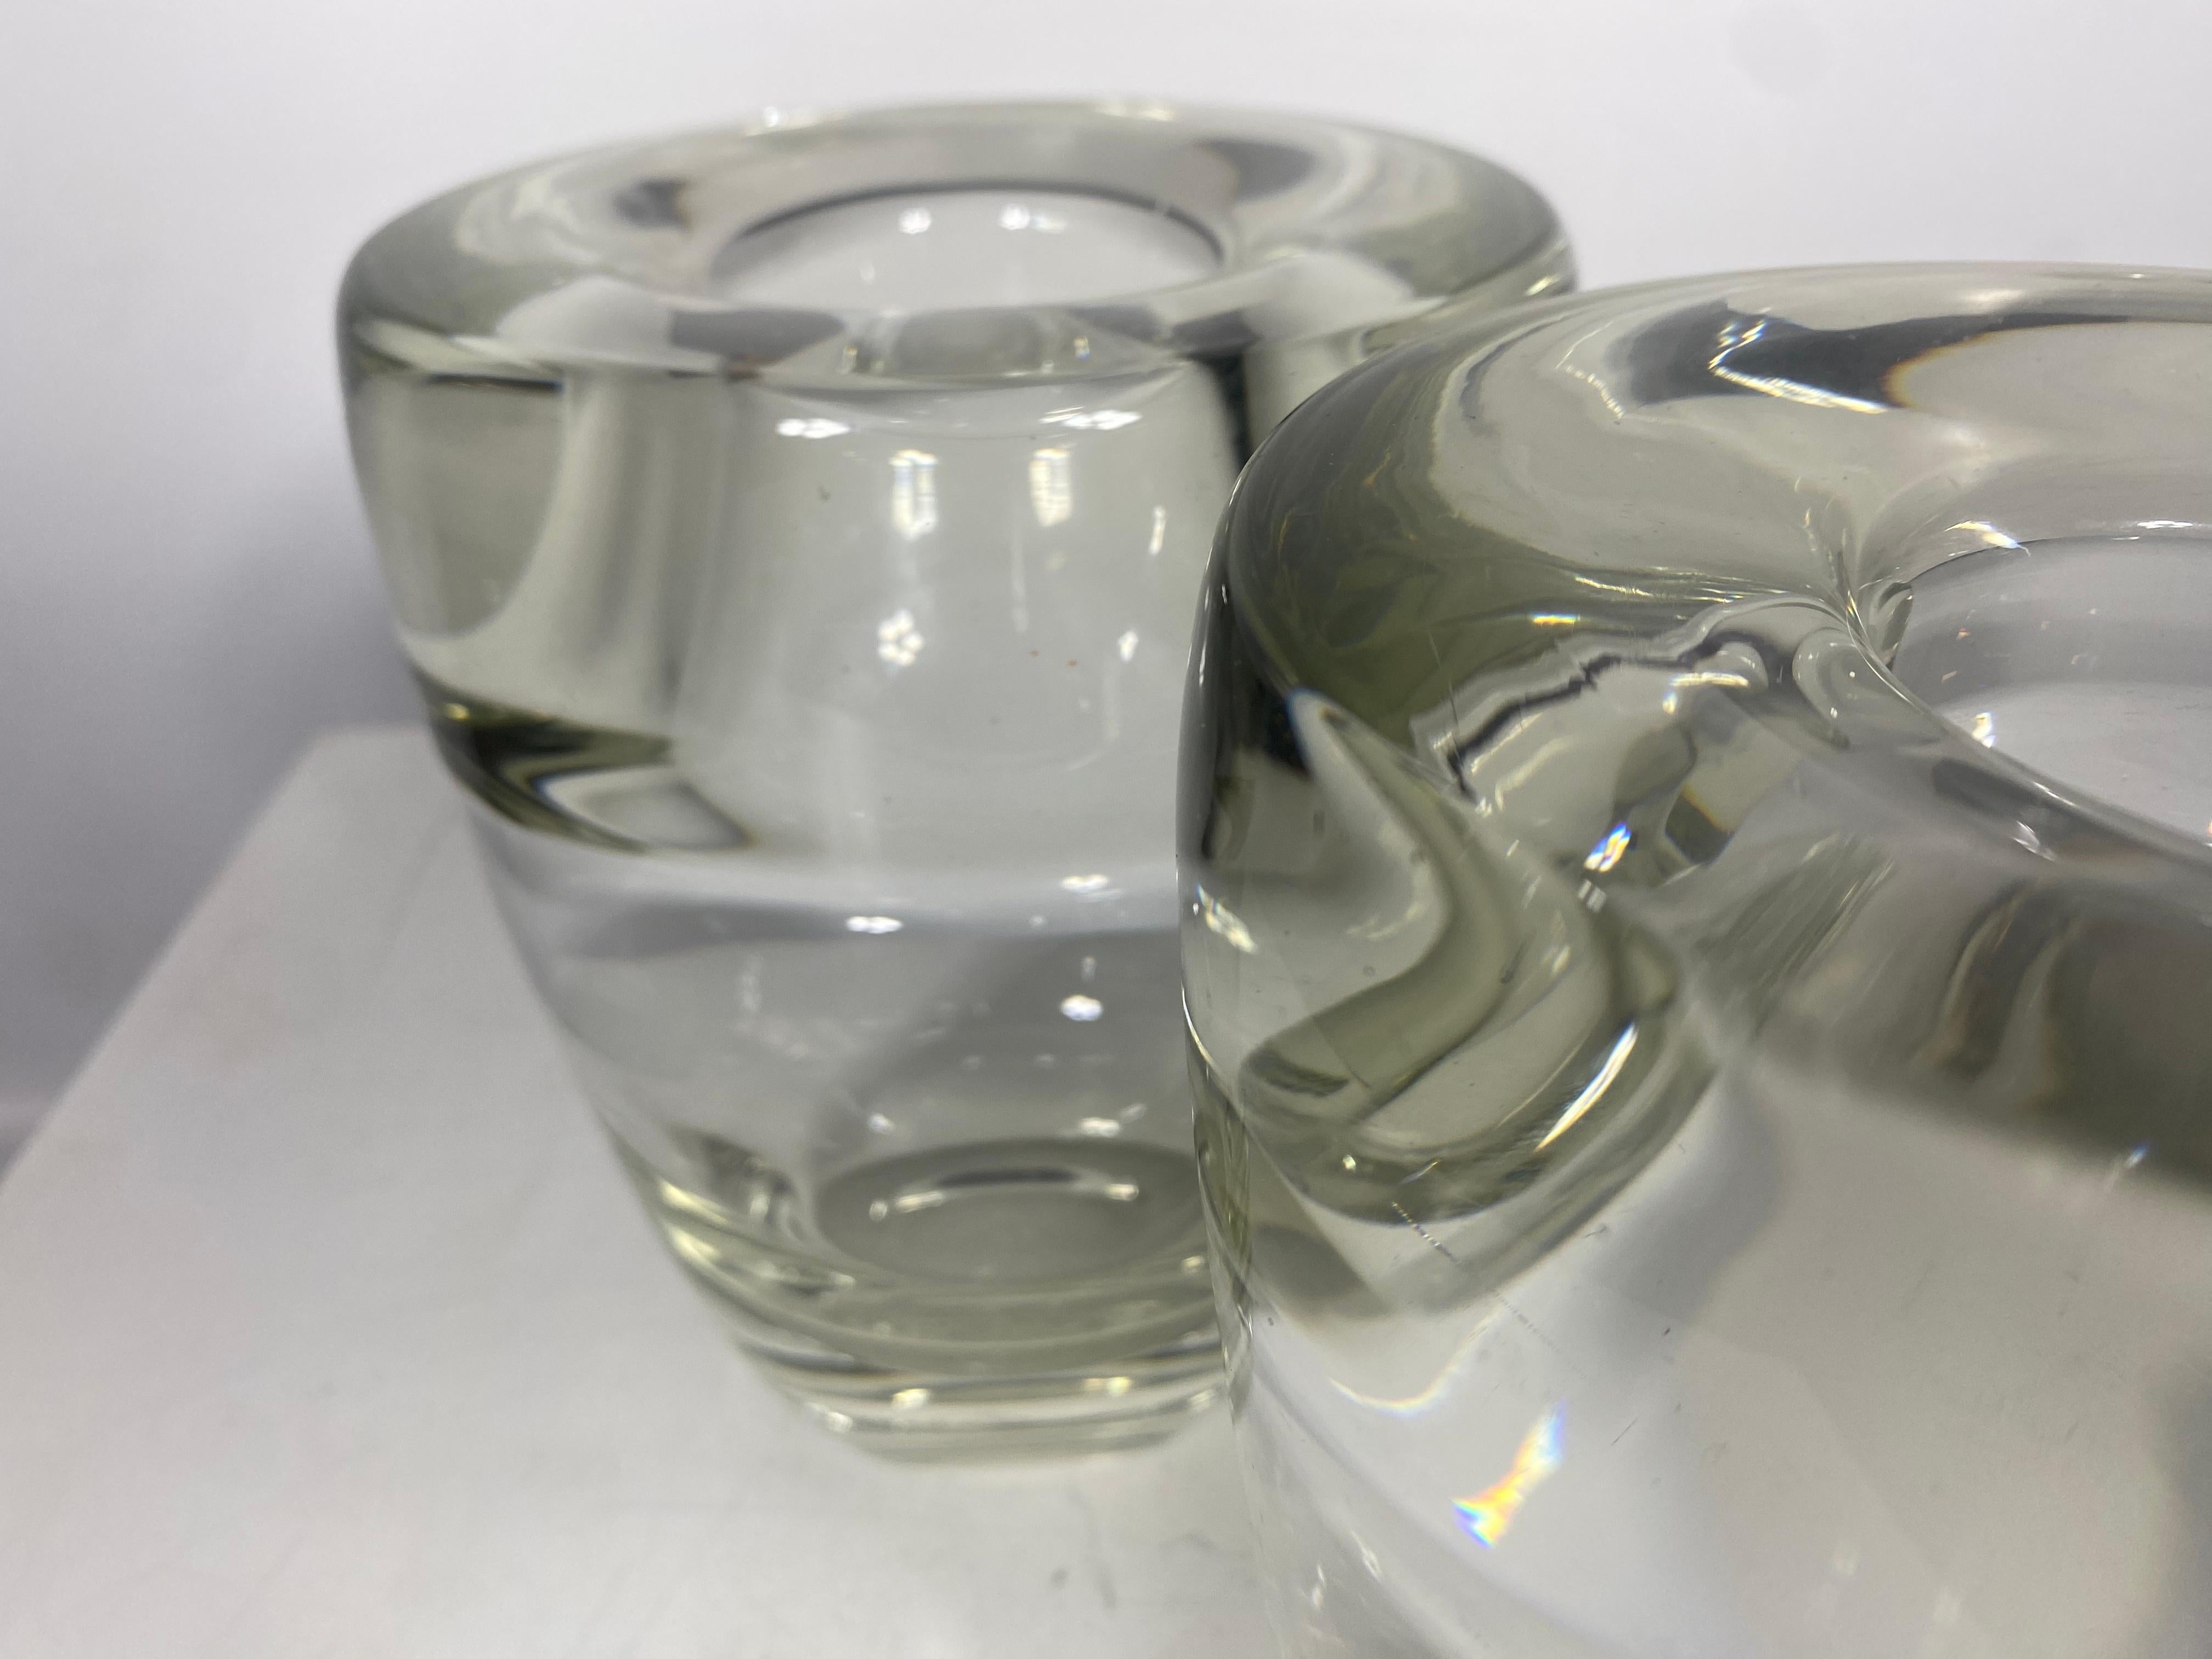 Vase aus geblasenem Glas, entworfen von A.D.Copier.
Saurer Stempel mit dem Vermerk 